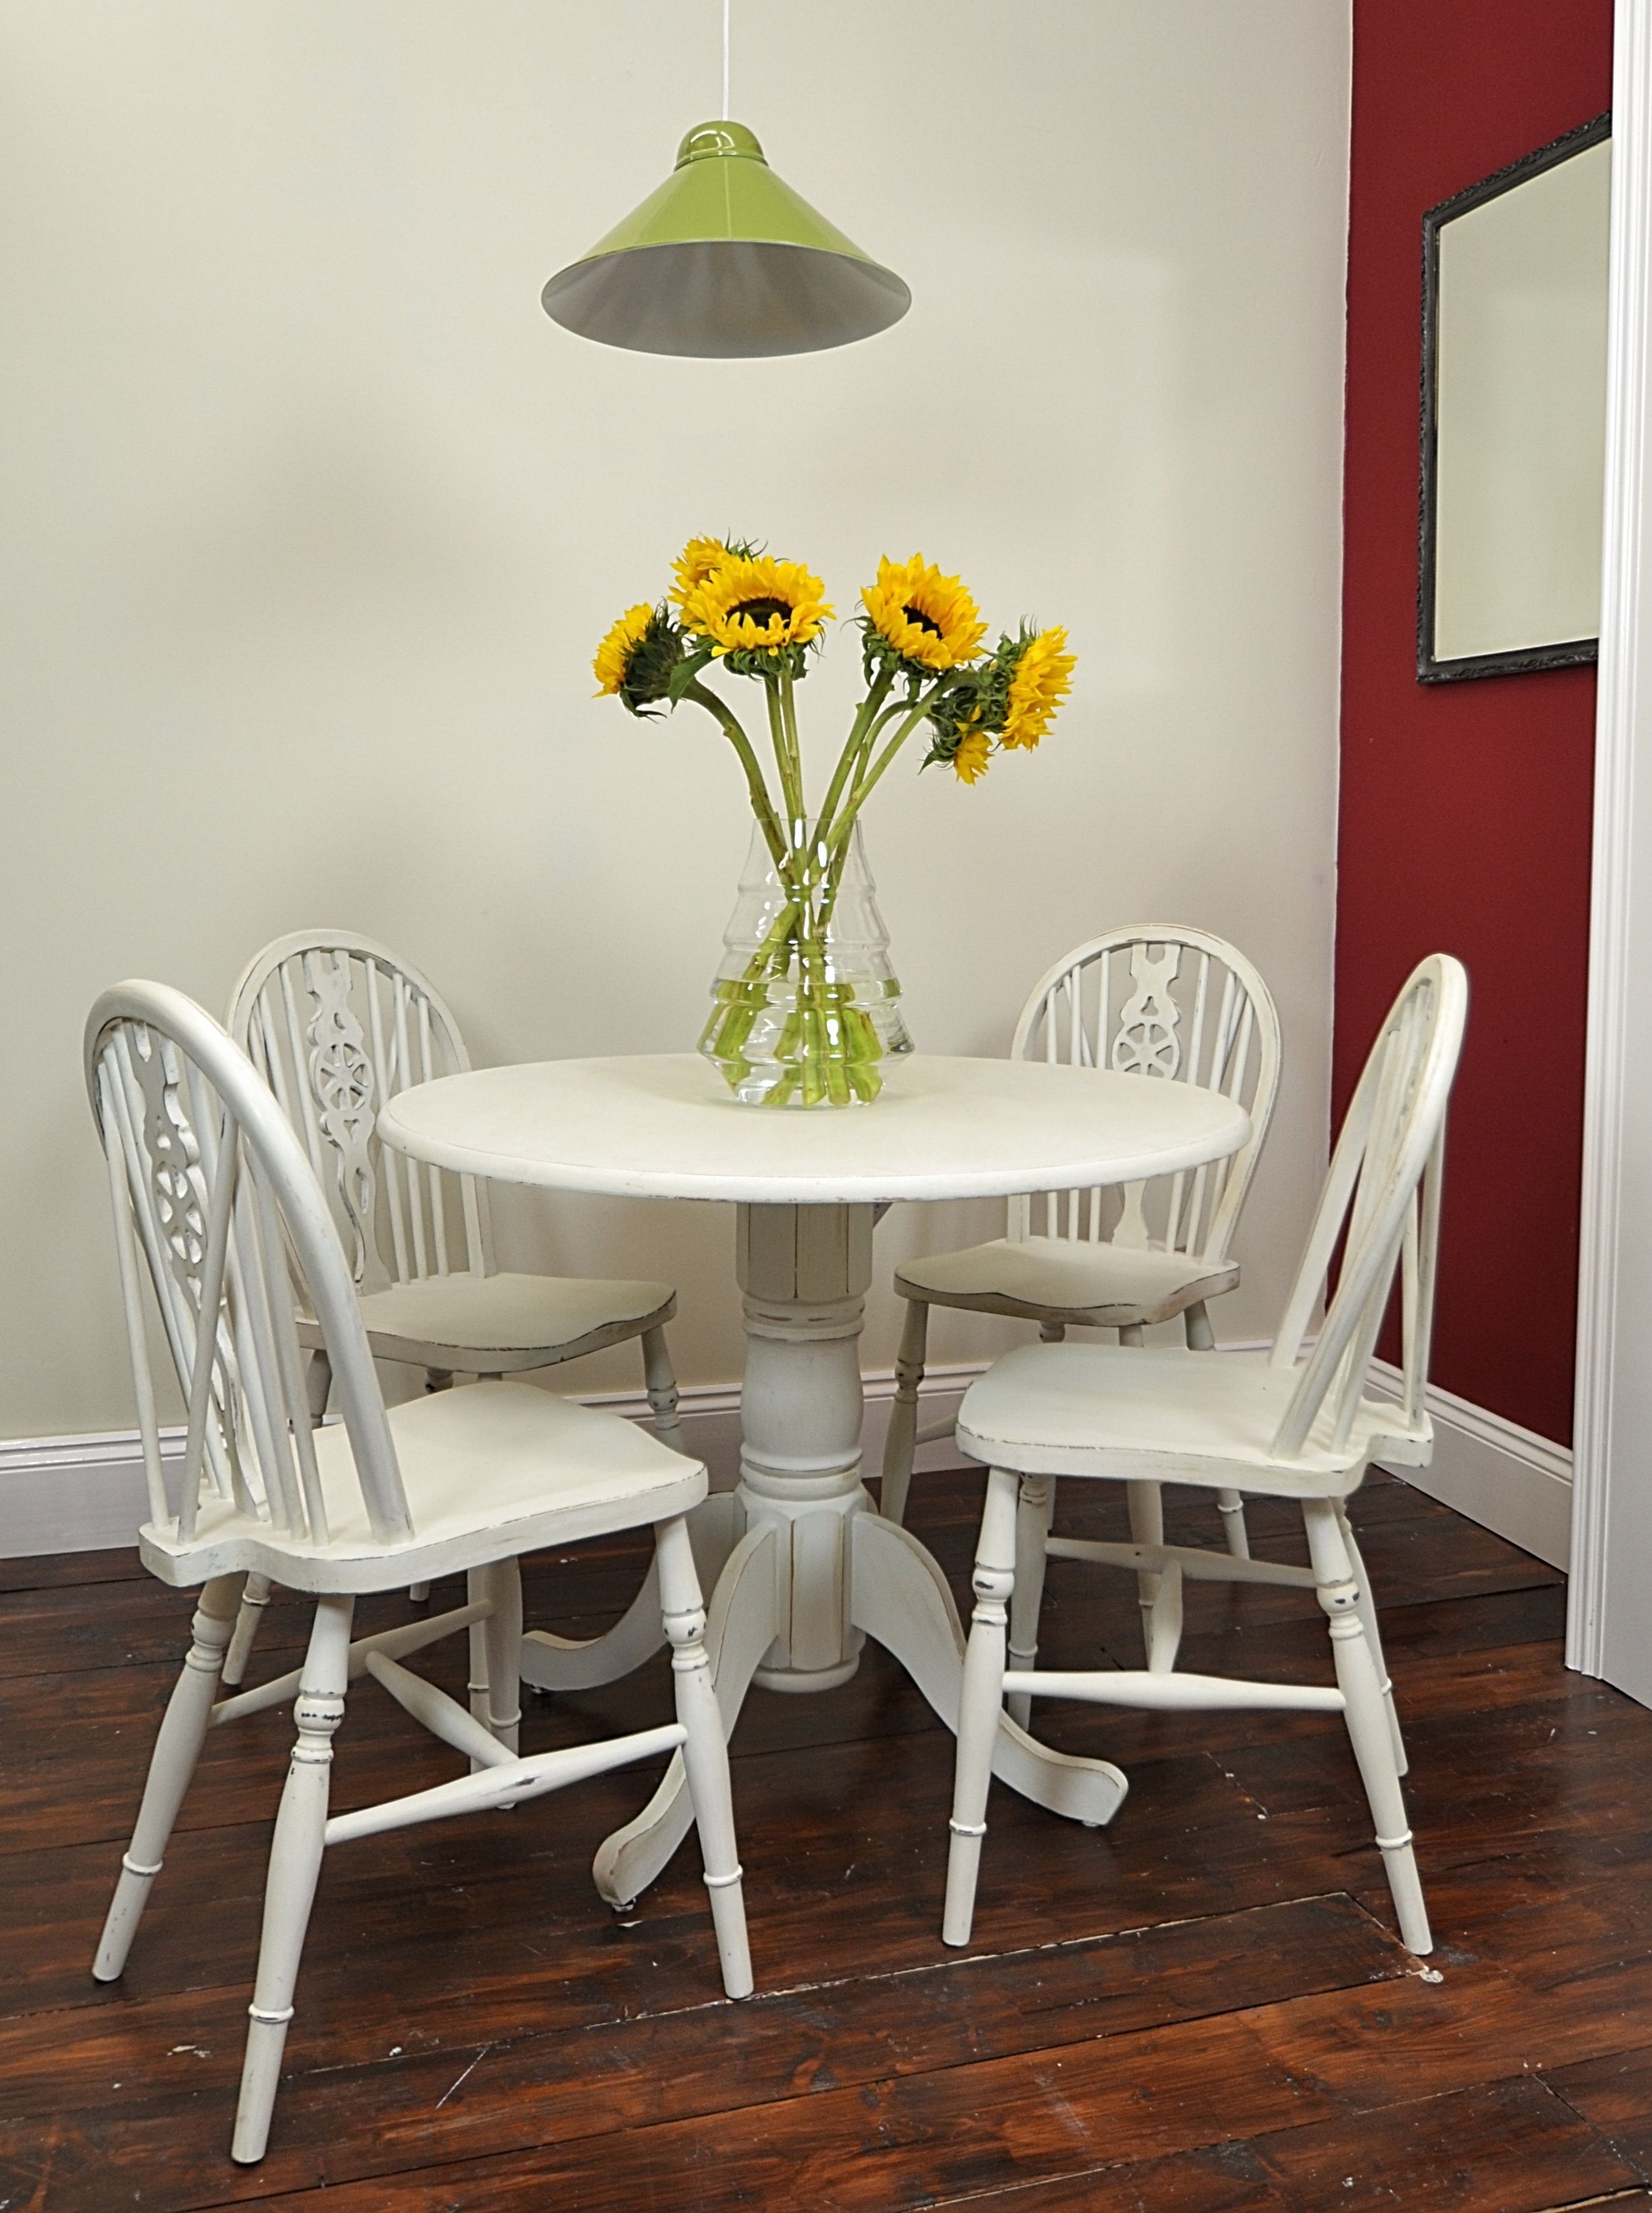 Лучшие стулья для кухни. Круглый стол в интерьере. Столы и стулья для кухни. Стол кухонный. Круглый обеденный стол в интерьере.